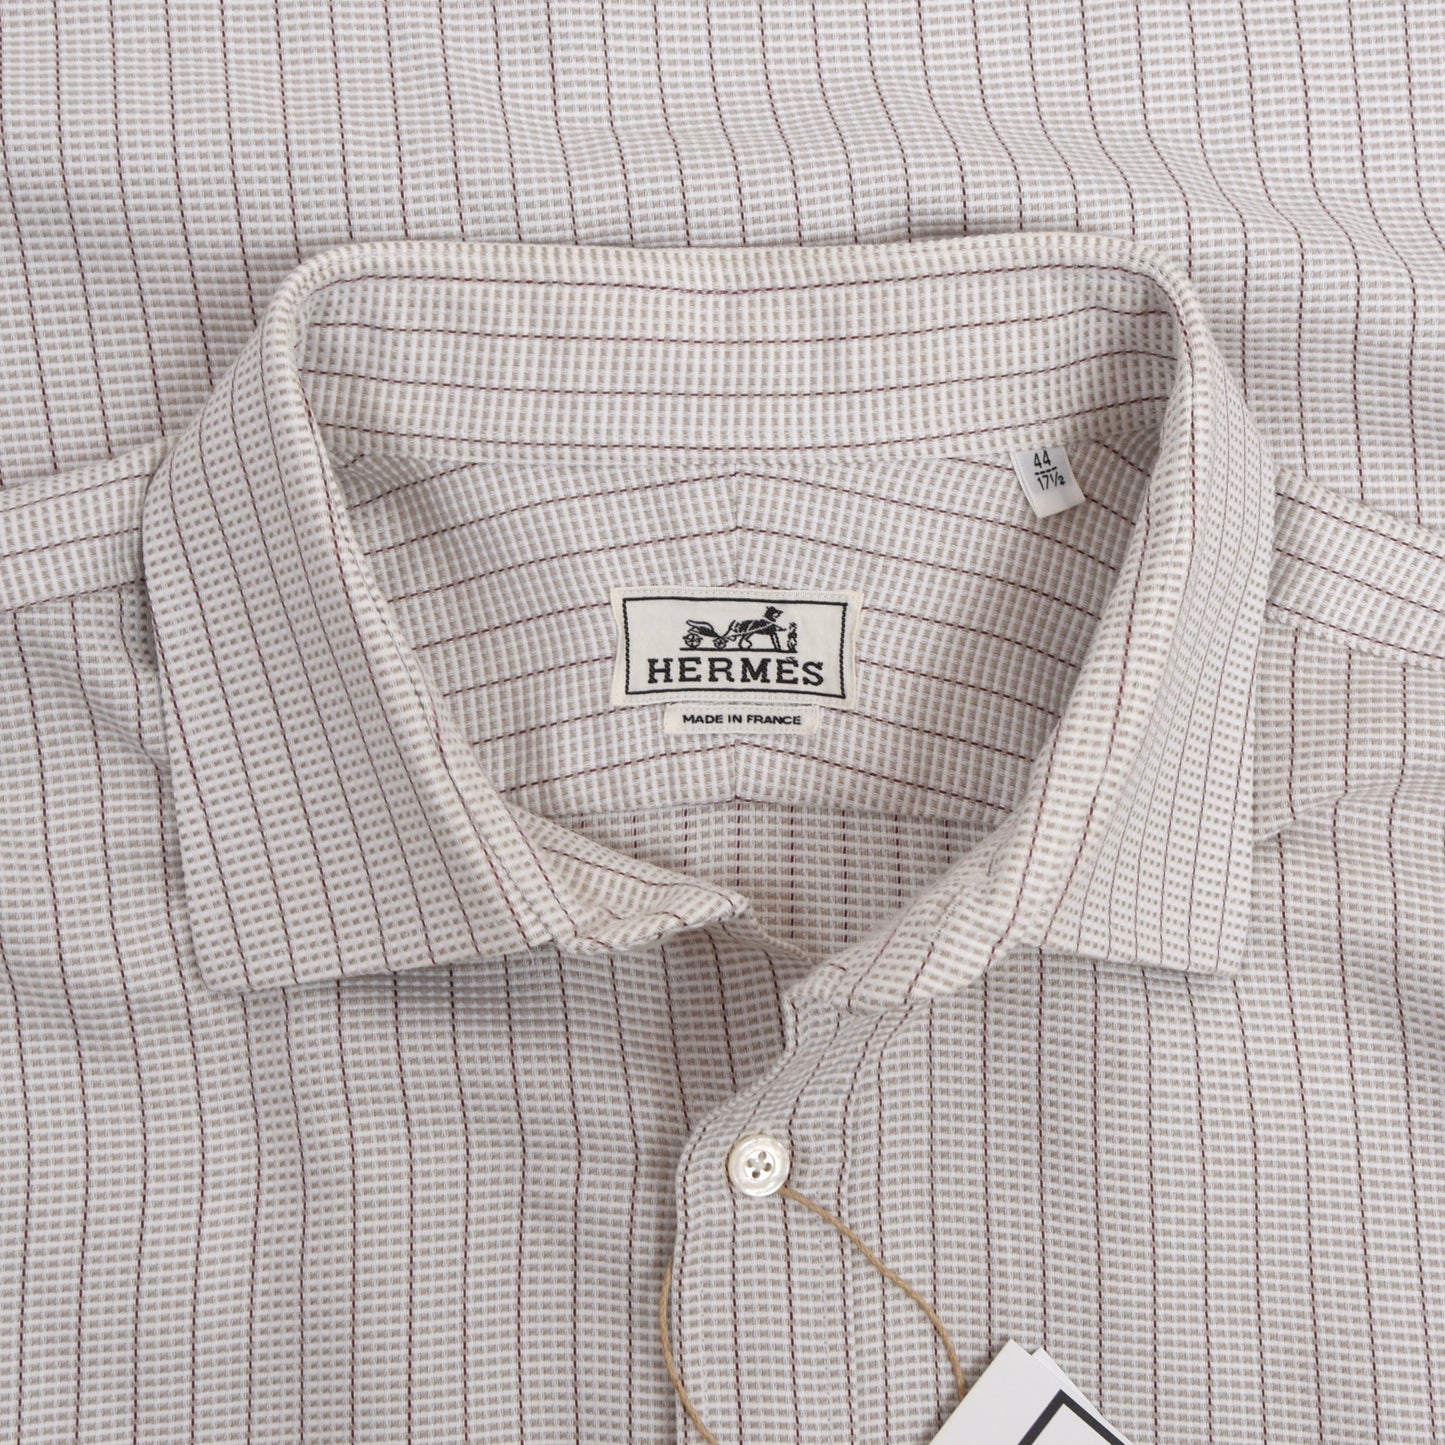 Hermès Paris Dress Shirt Size 44/17.5 - Stripes